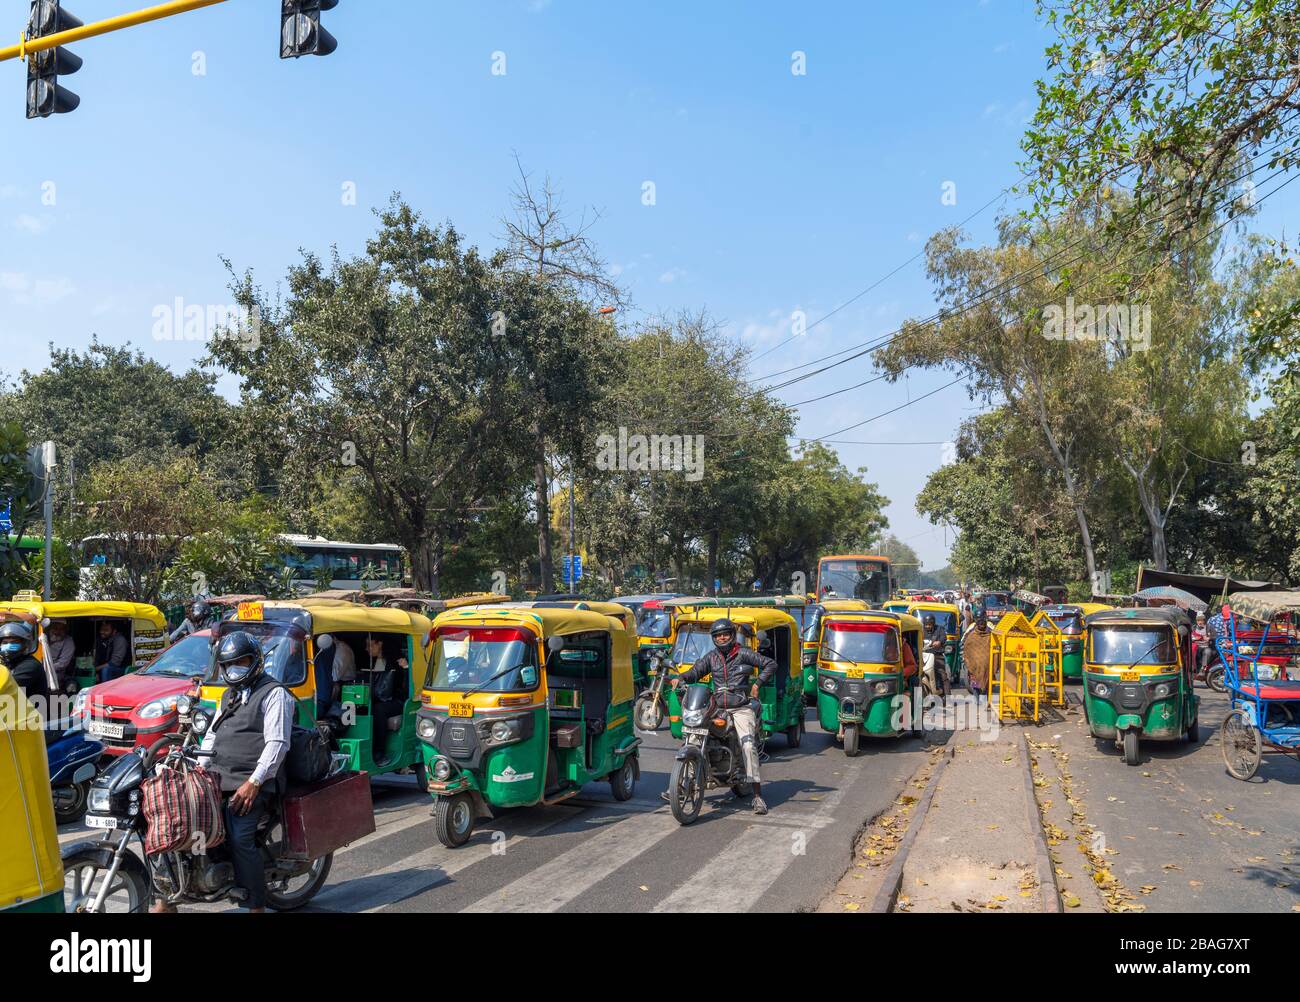 Tuk-tuks (auto rickshaws) at traffic lights in Old Delhi, Delhi, India Stock Photo